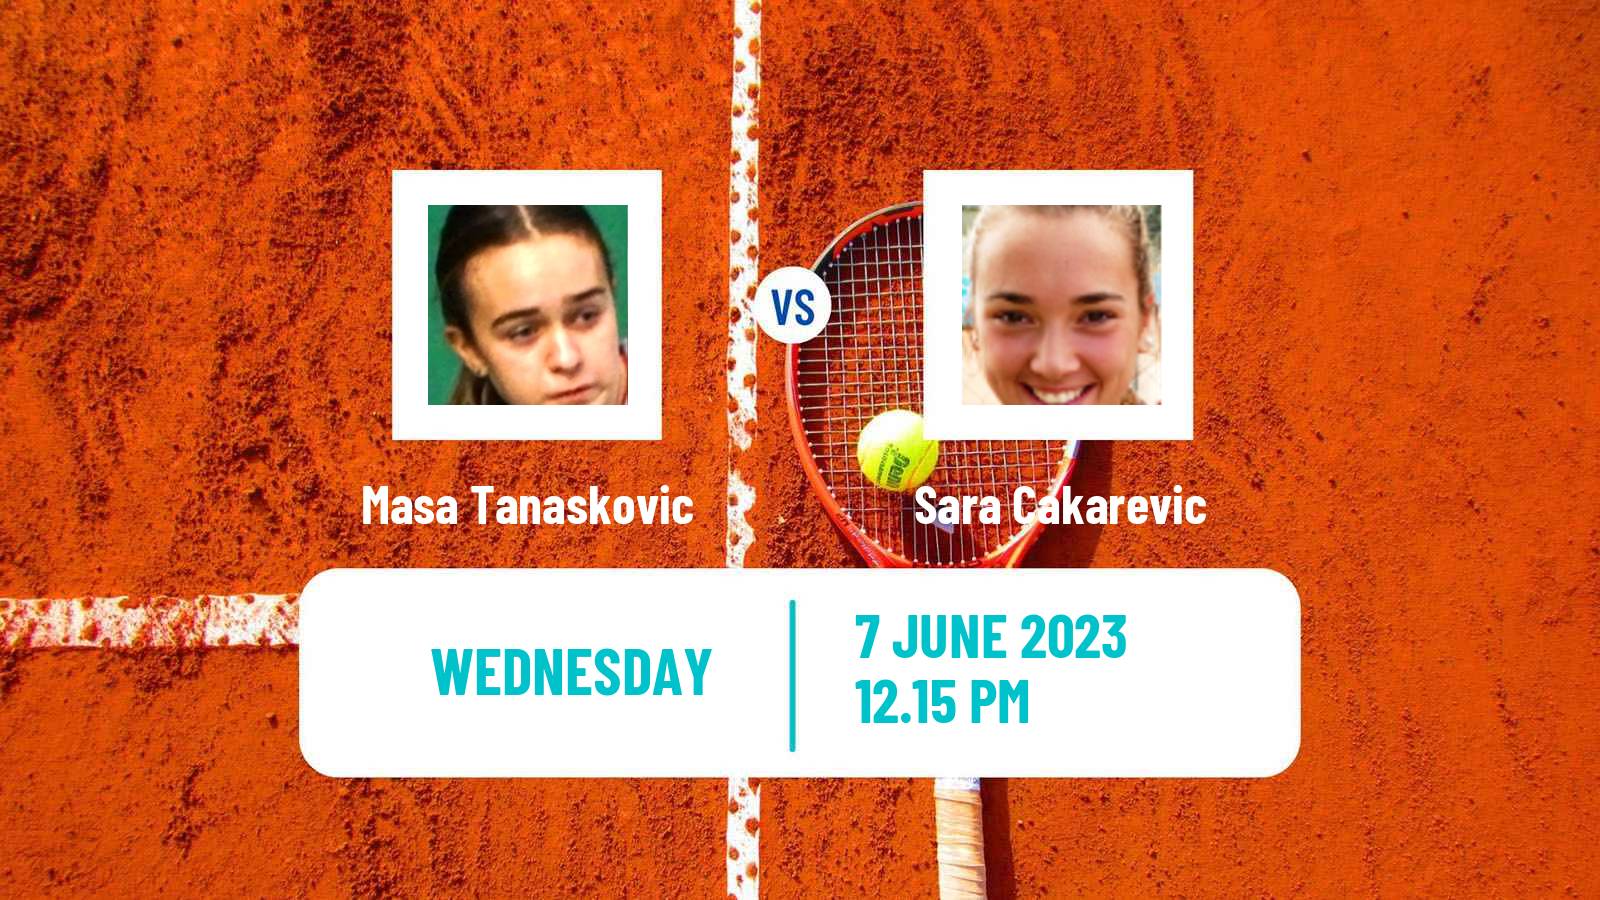 Tennis ITF W25 Kursumlijska Banja 2 Women Masa Tanaskovic - Sara Cakarevic